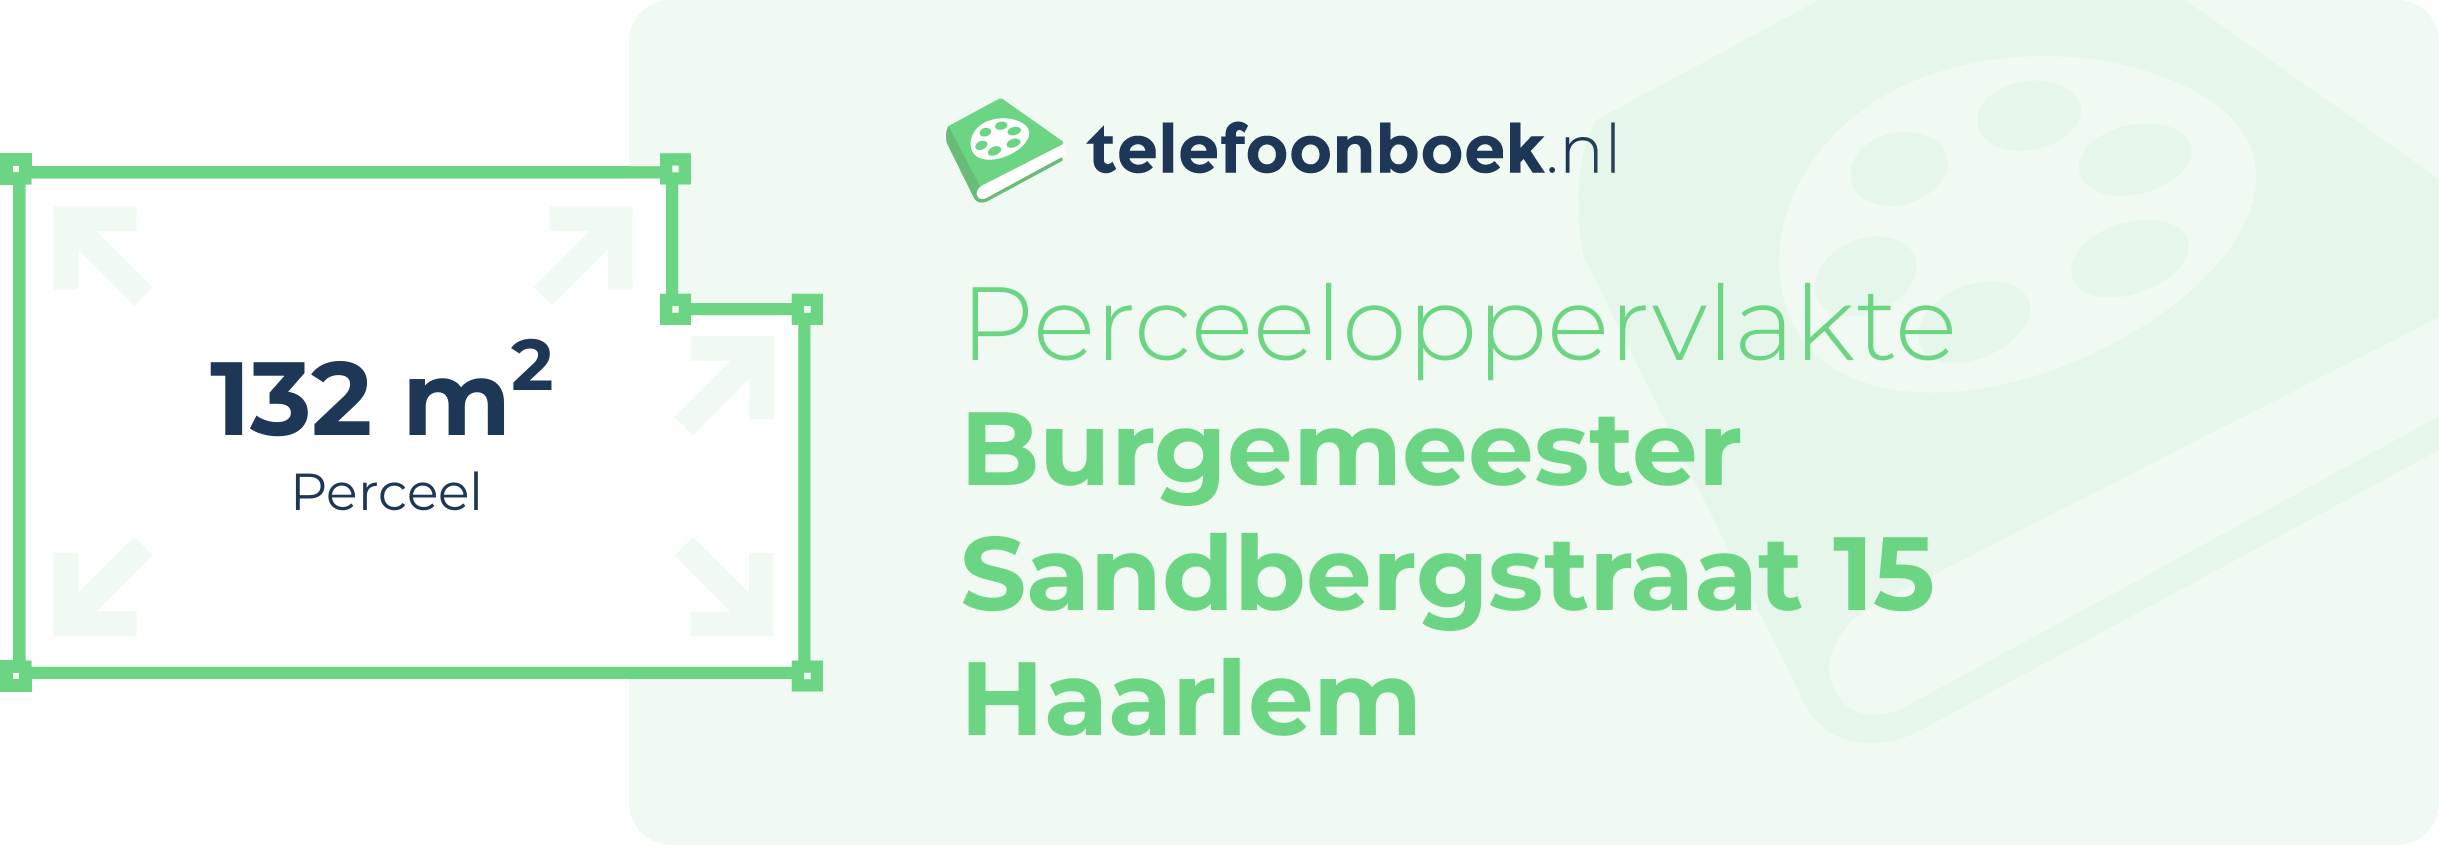 Perceeloppervlakte Burgemeester Sandbergstraat 15 Haarlem